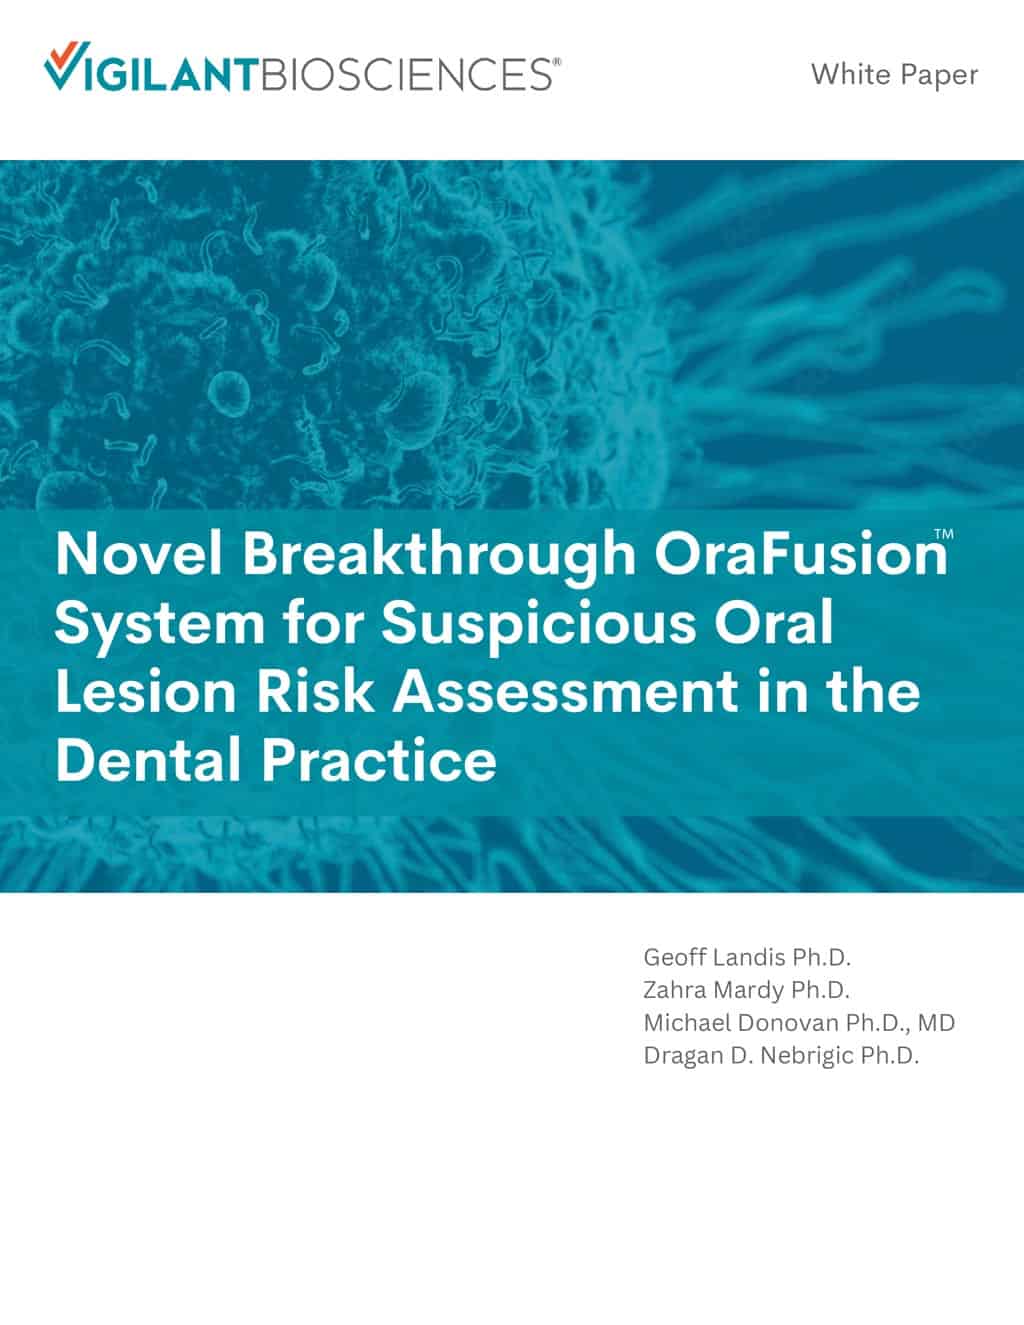 Nuevo e innovador sistema OraFusion™ para la evaluación del riesgo de lesiones orales sospechosas en la práctica dental Portada del informe técnico